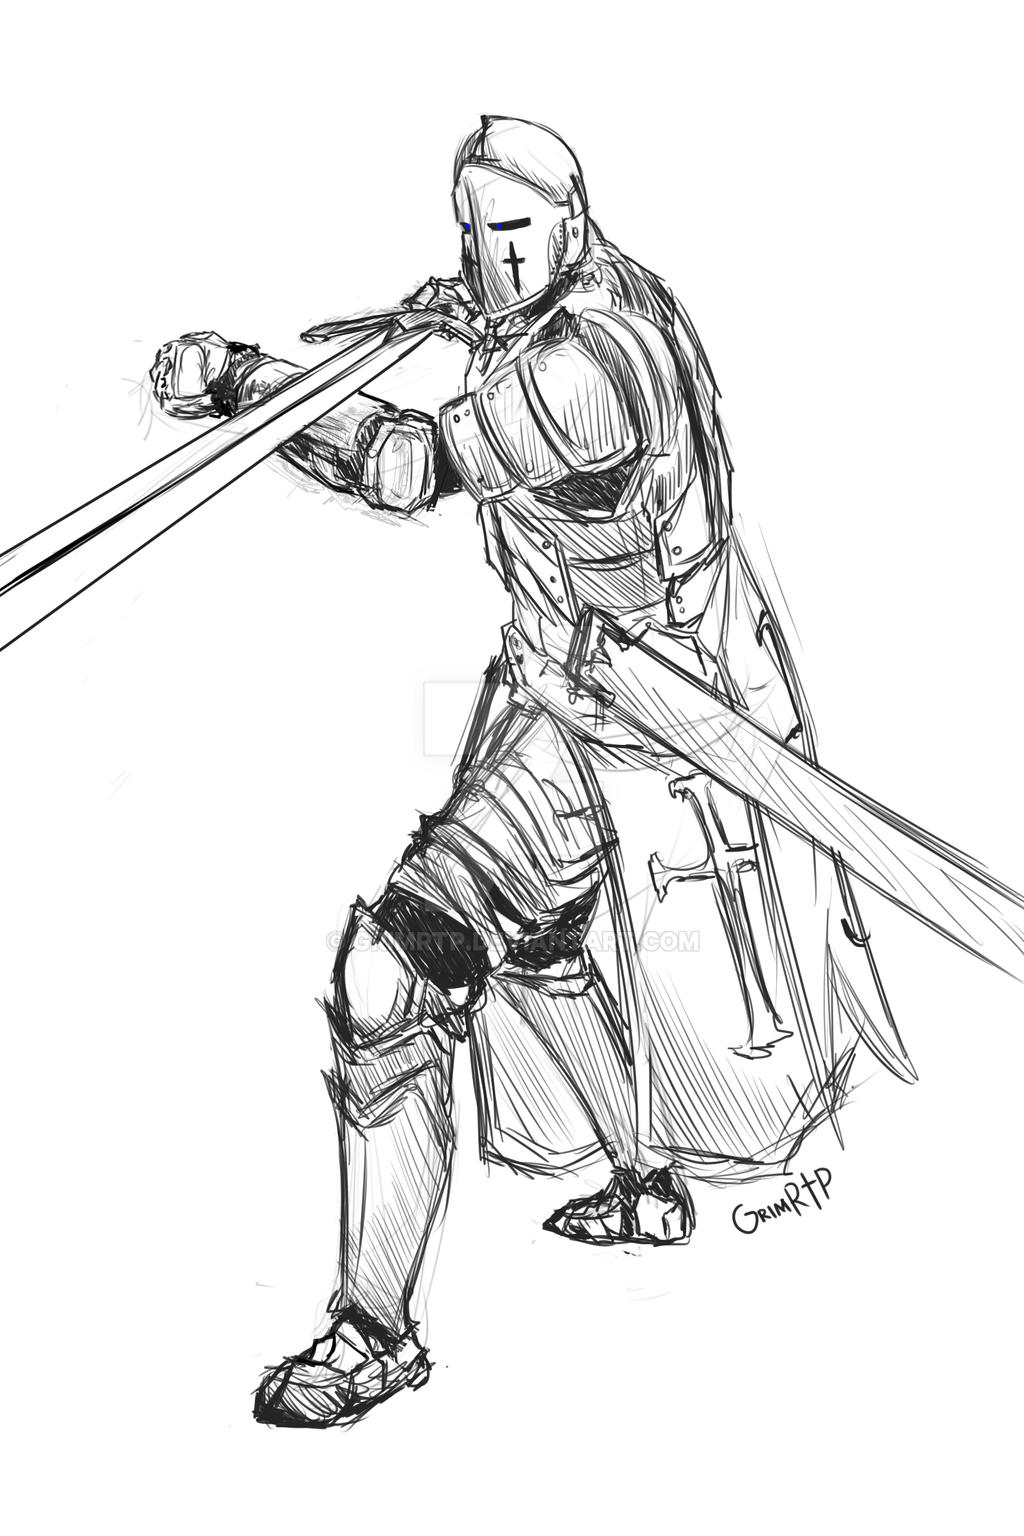 Knight Sketch by GrimRtP on DeviantArt